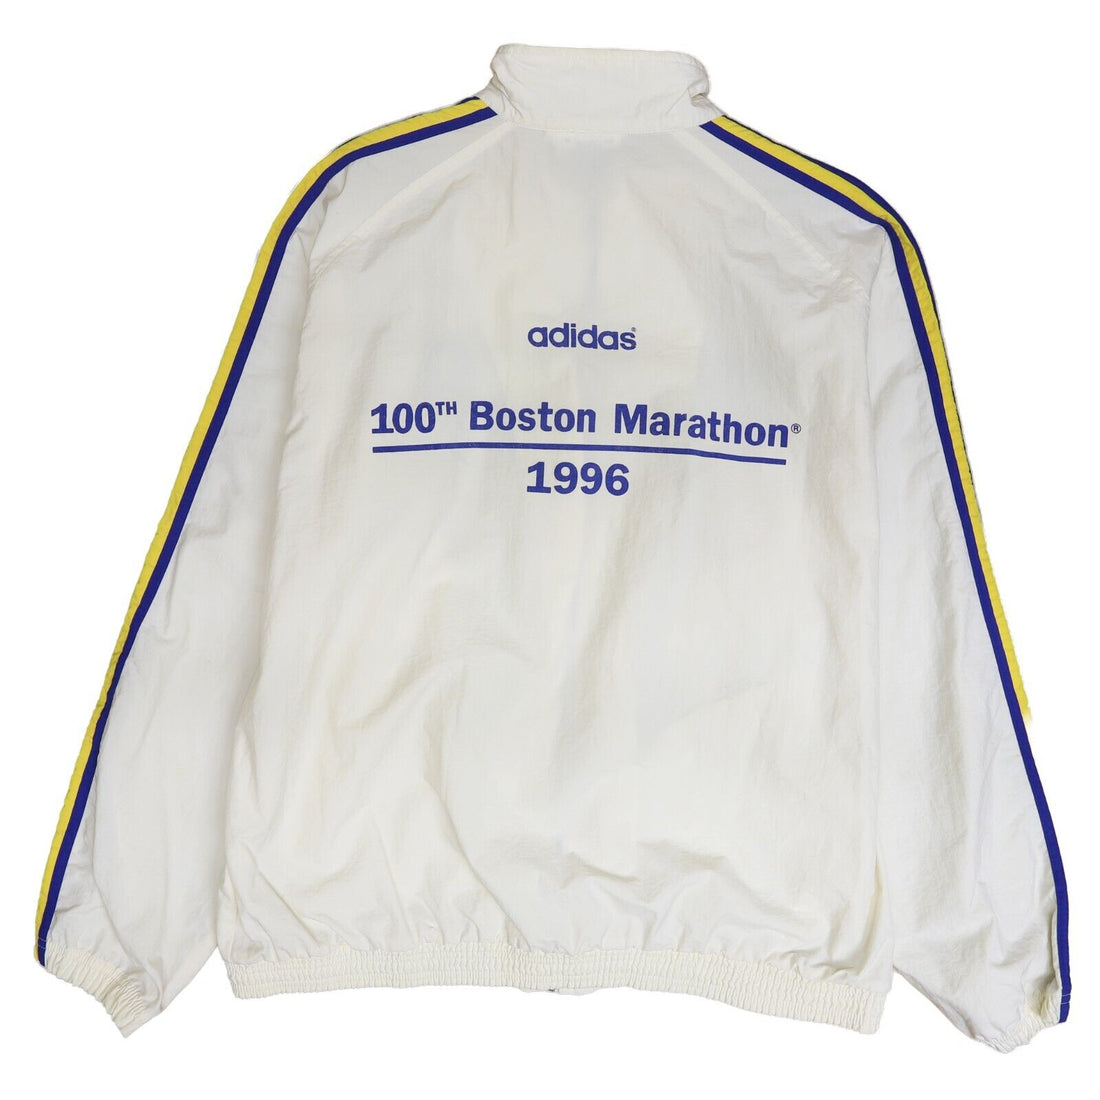 Vintage Adidas 100th Boston Marathon Windbreaker Light Jacket Large 1996 90s